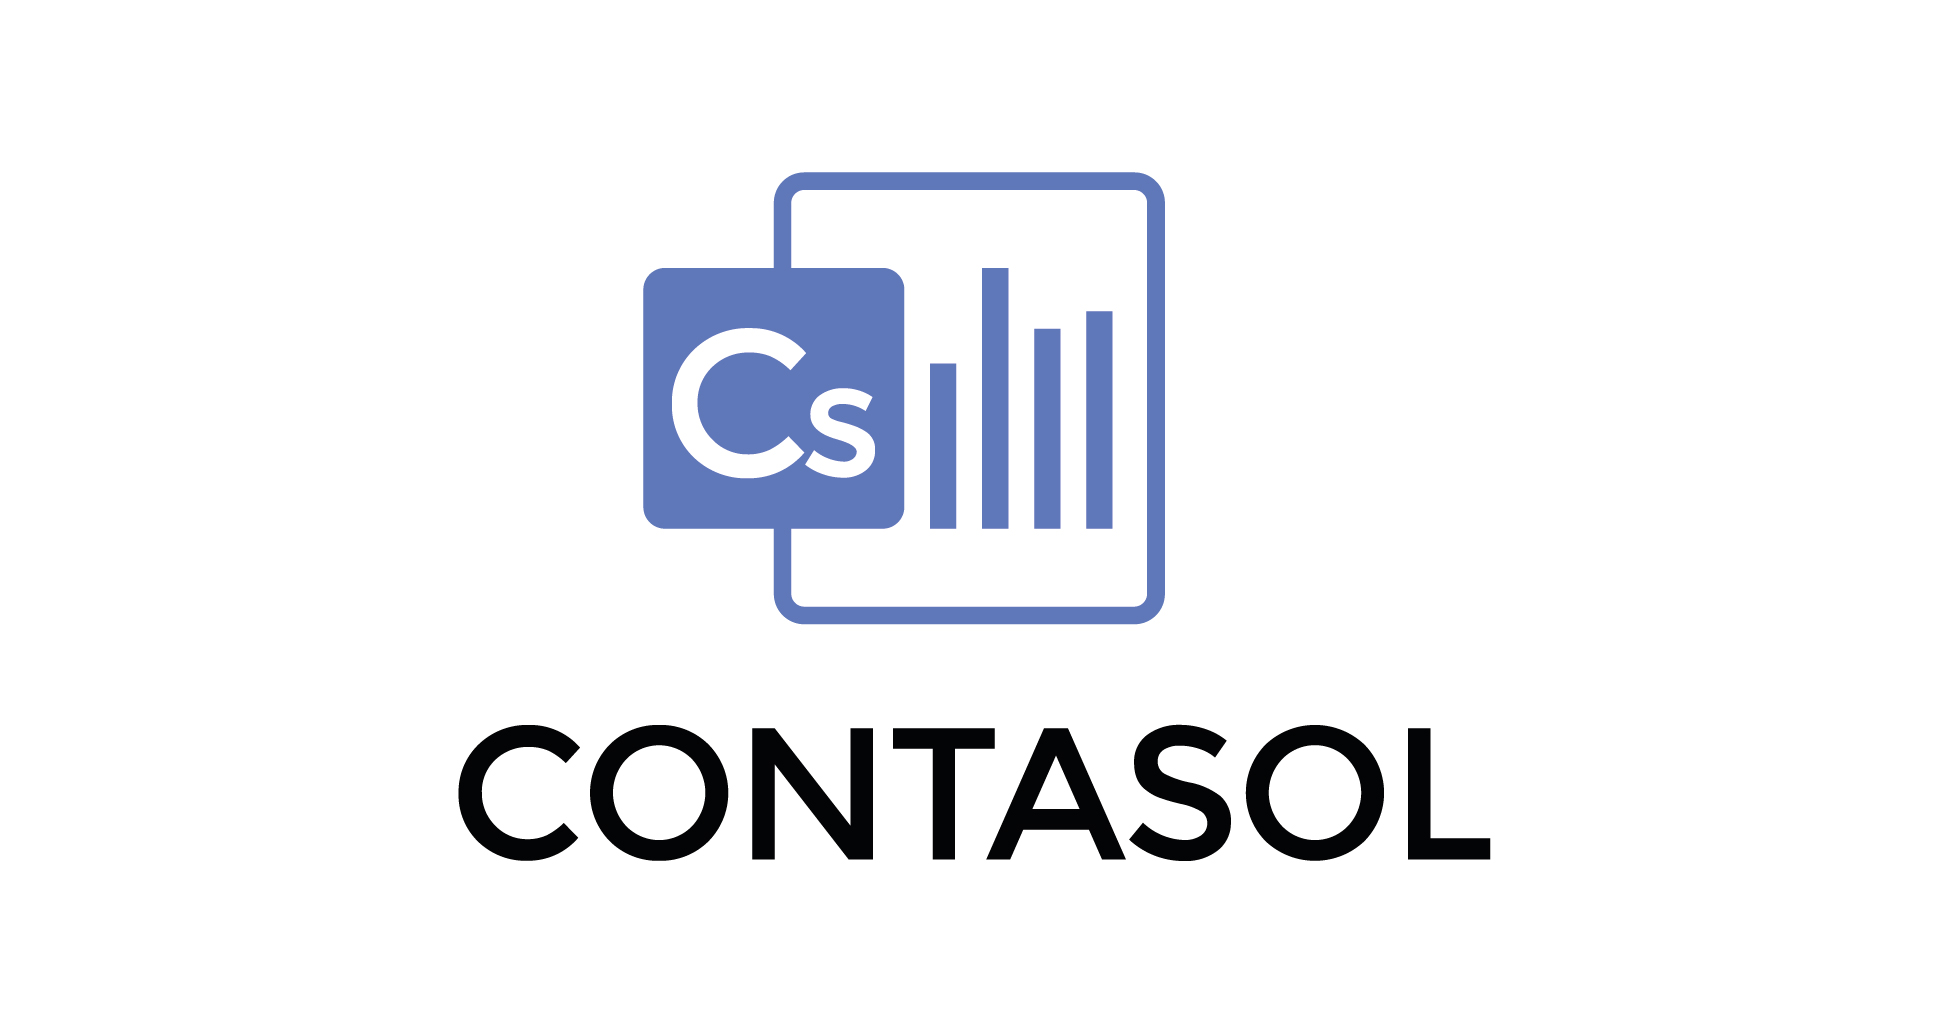 ContaSol